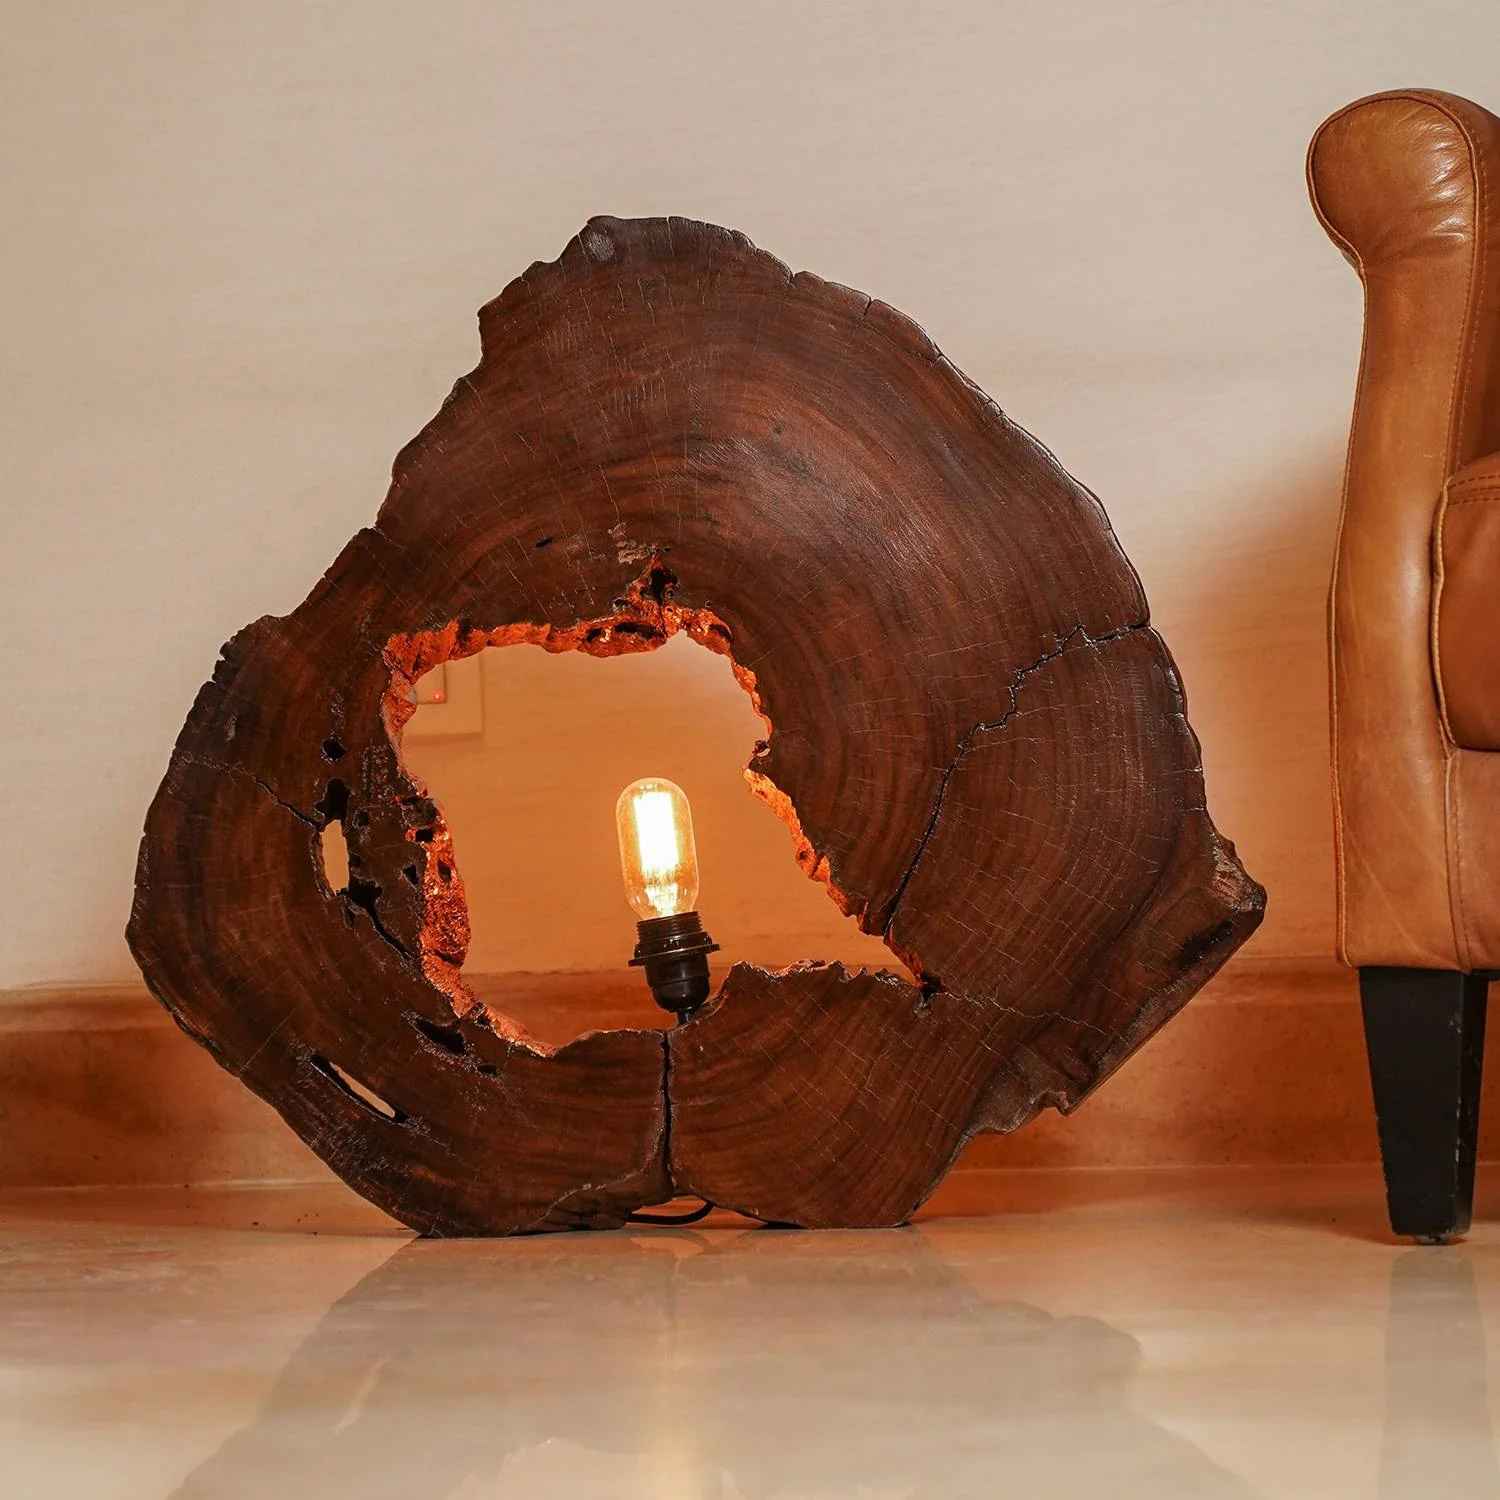 Rustic Wood slice floor Lamp (Sheesham Wood)